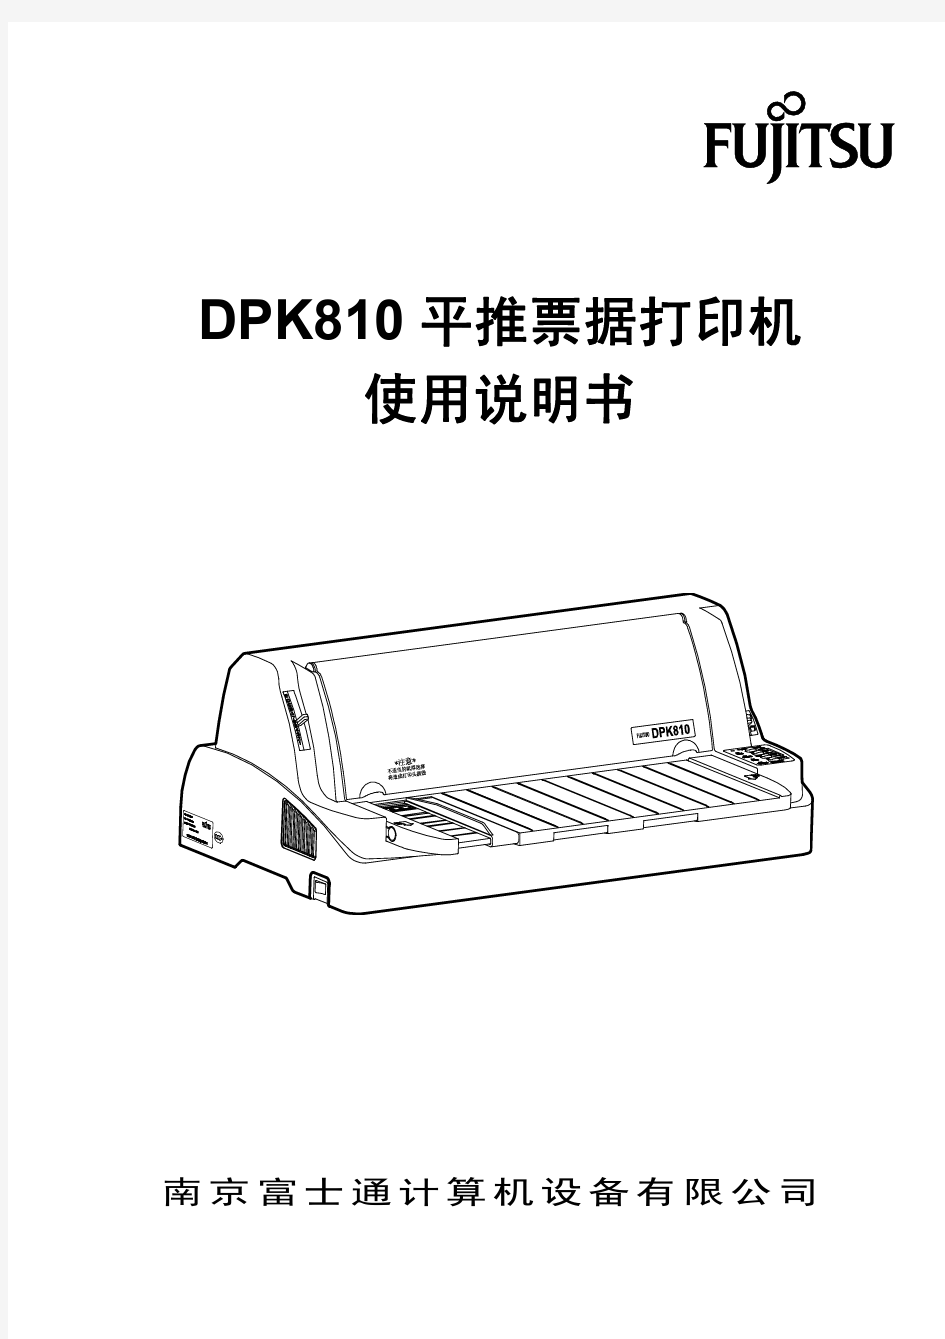 DPK810说明书